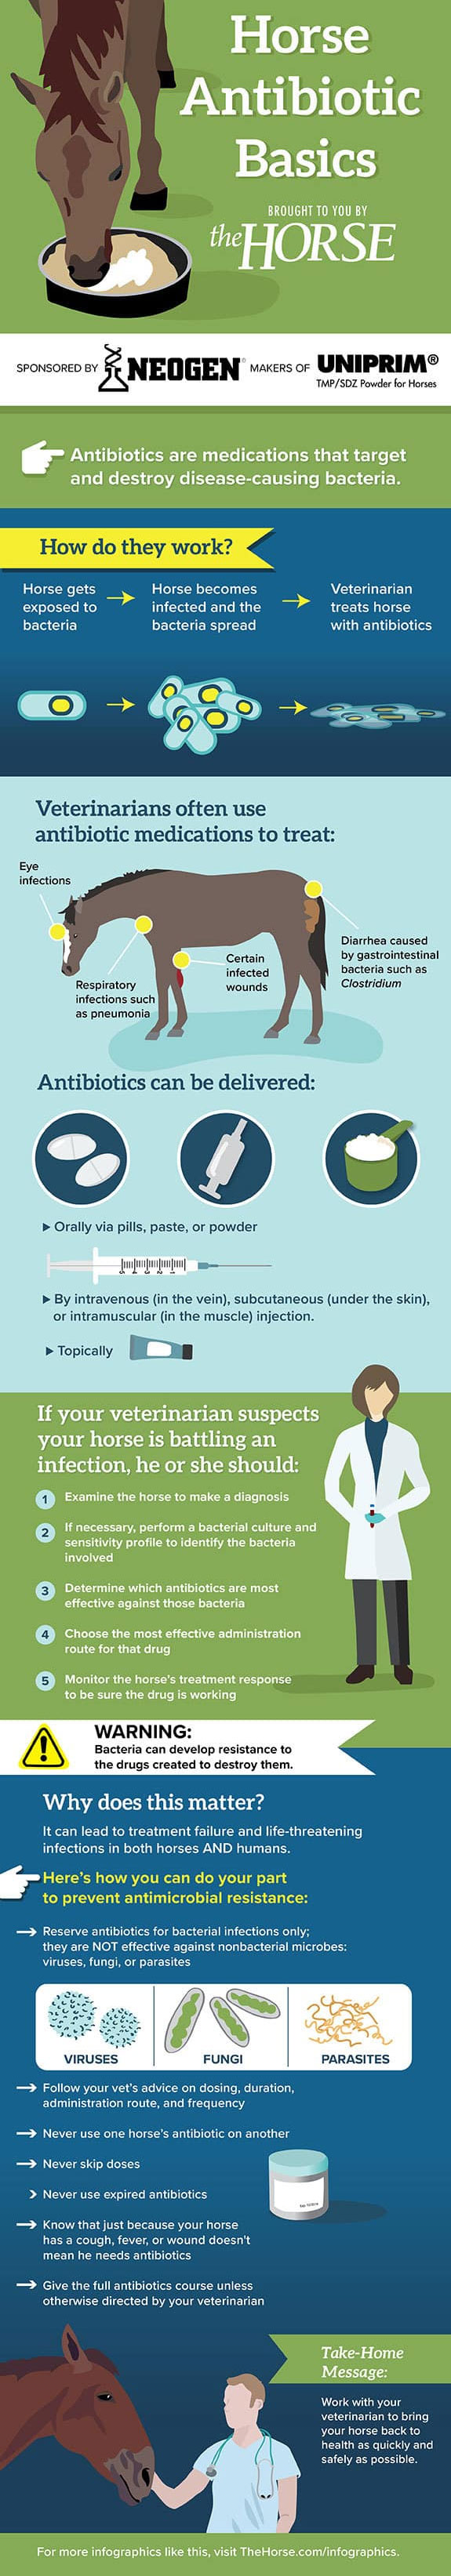 Horse Antibiotic Basics